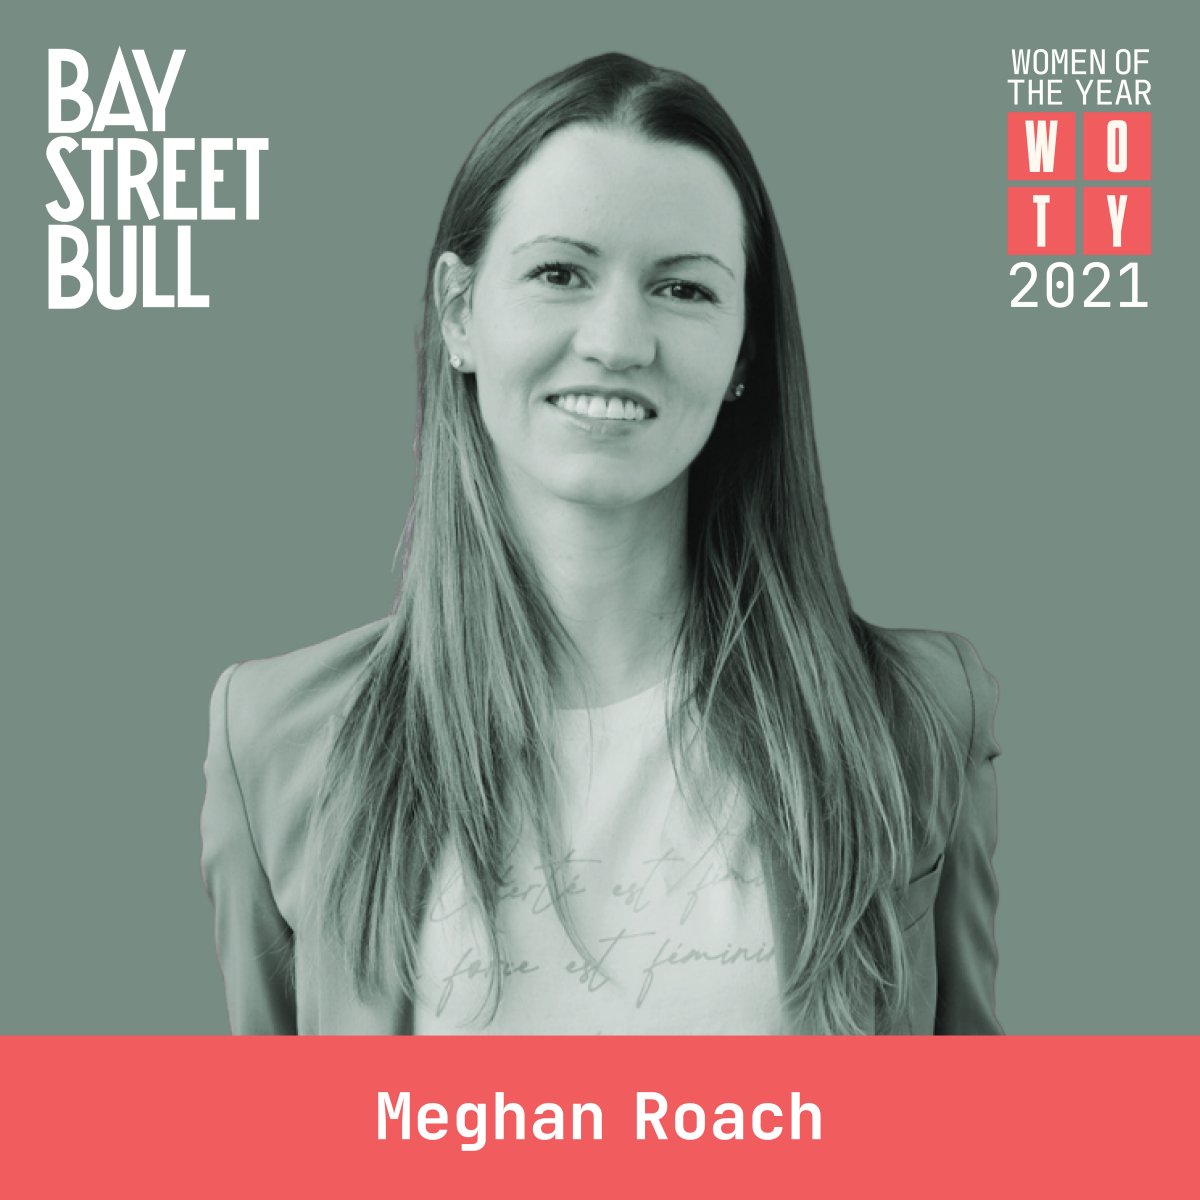 Meghan Roach in blazer